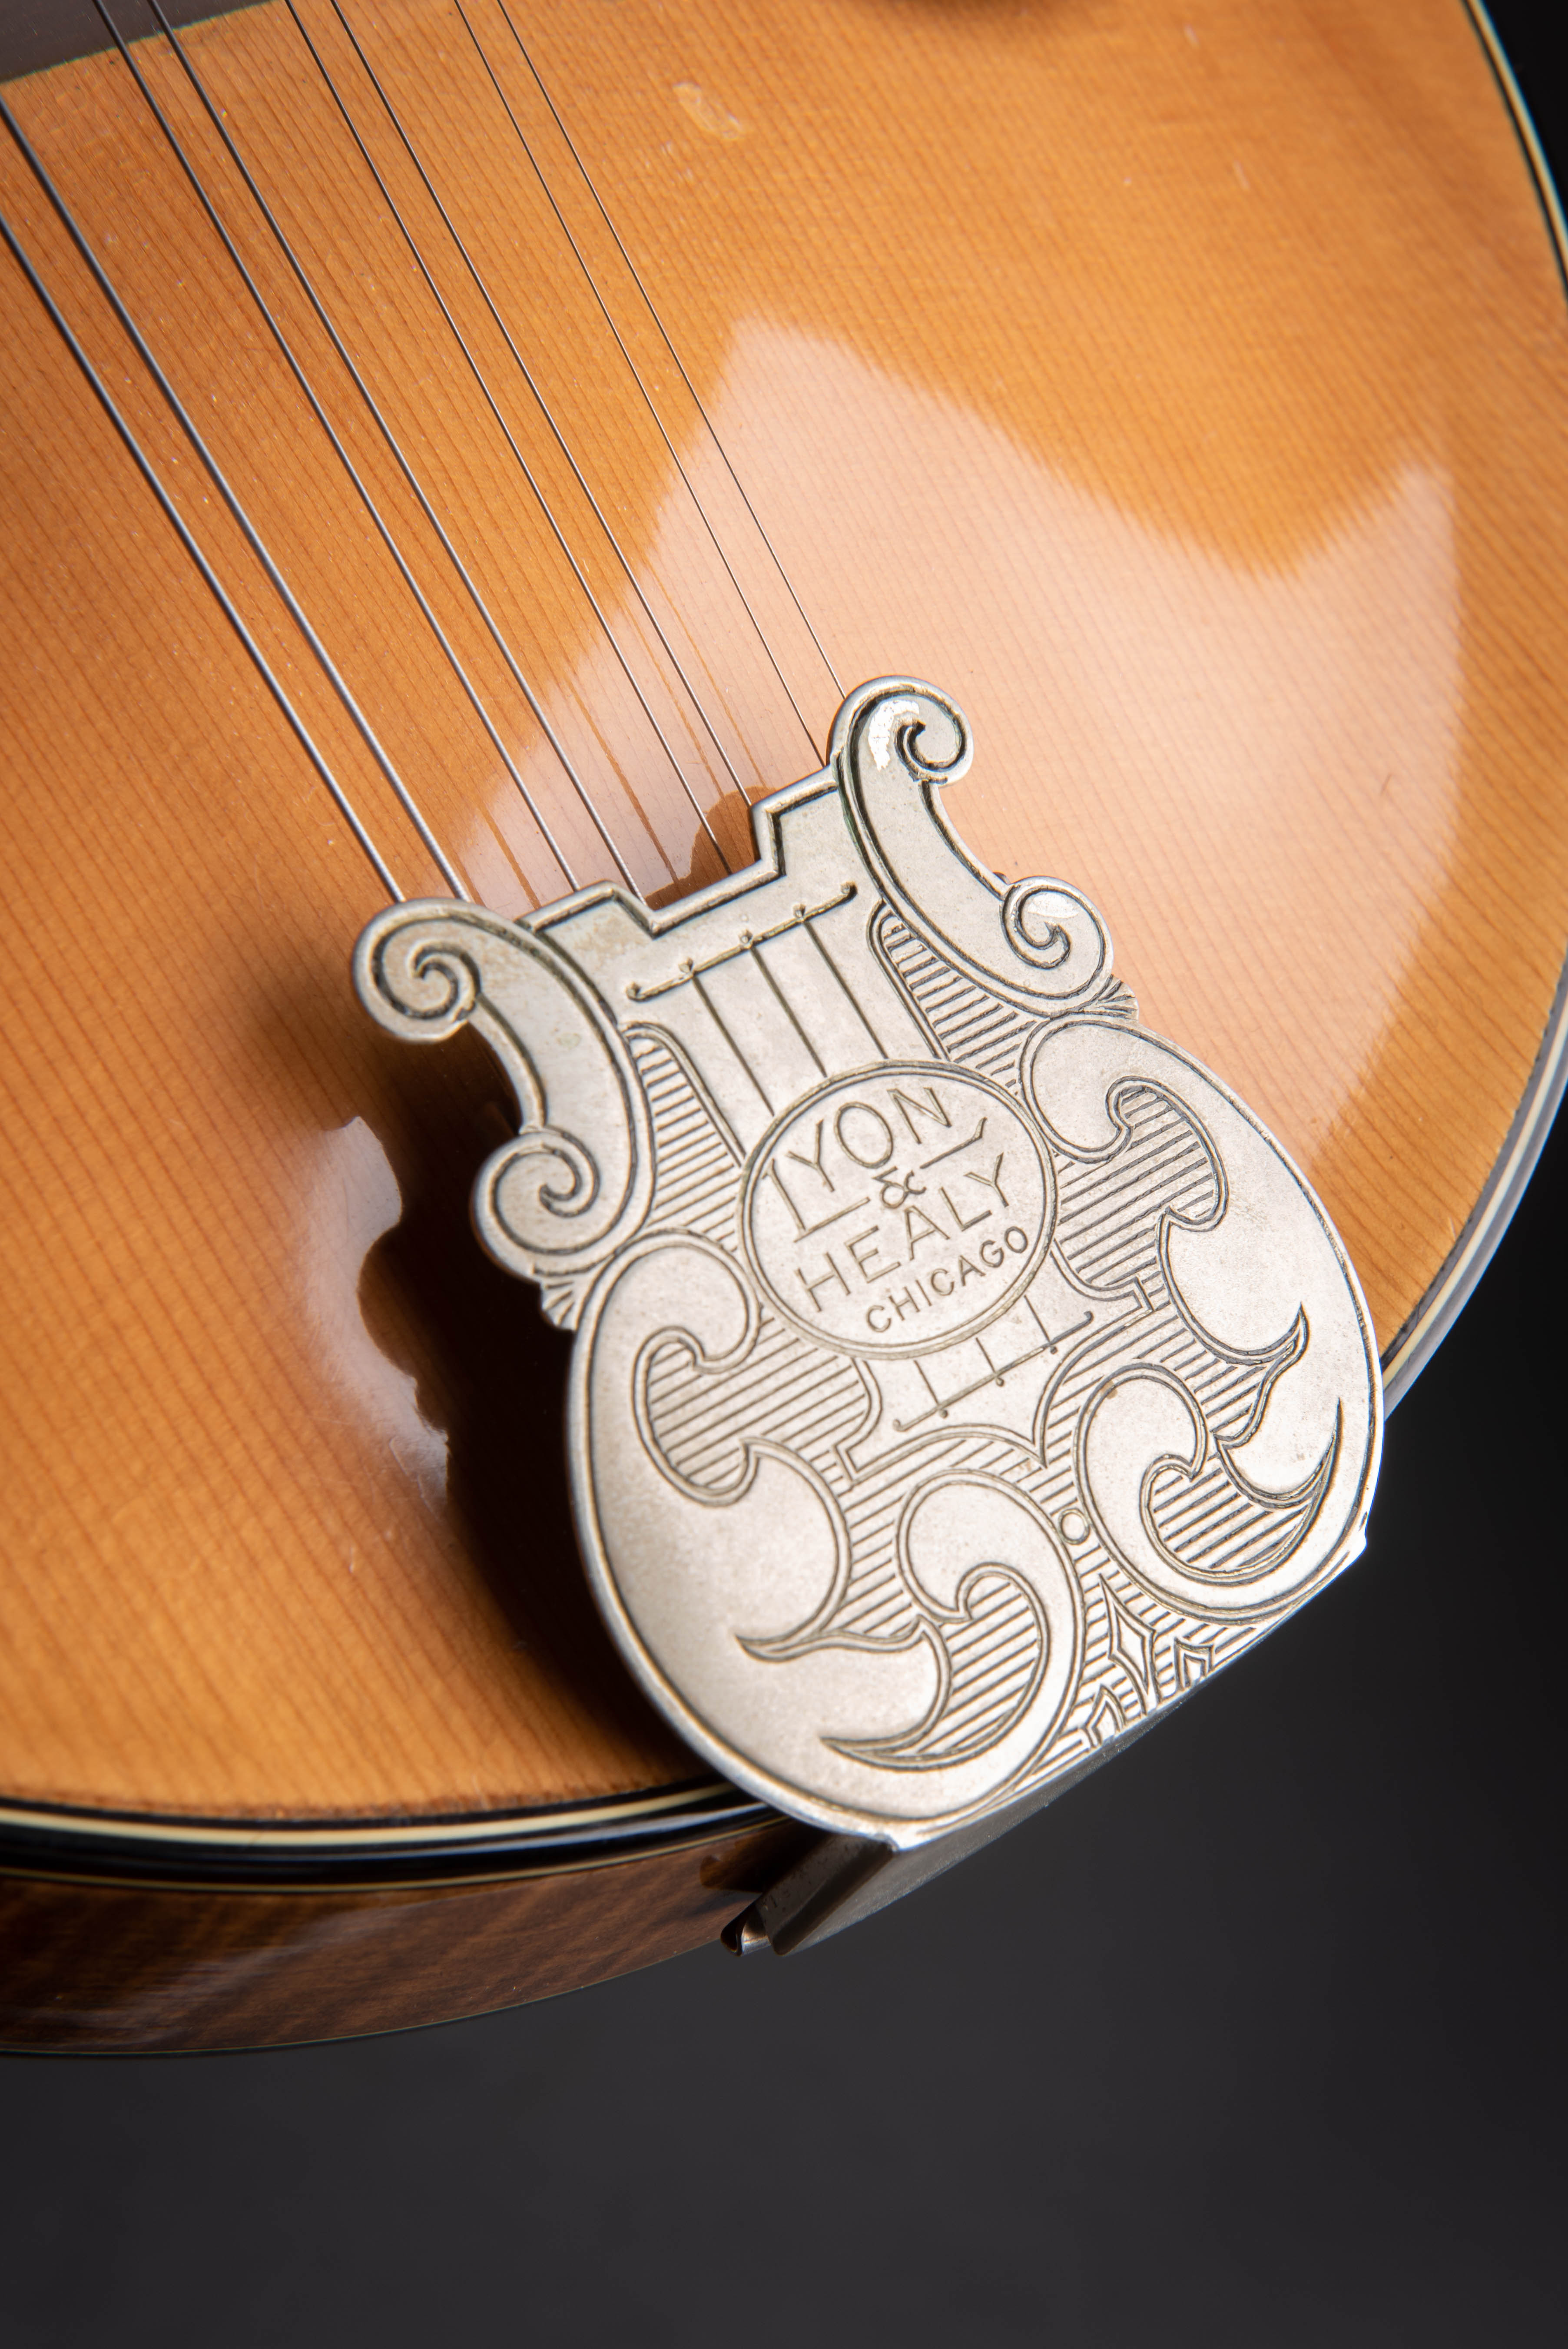 1918 Lyon & Healy Style A Mandolin